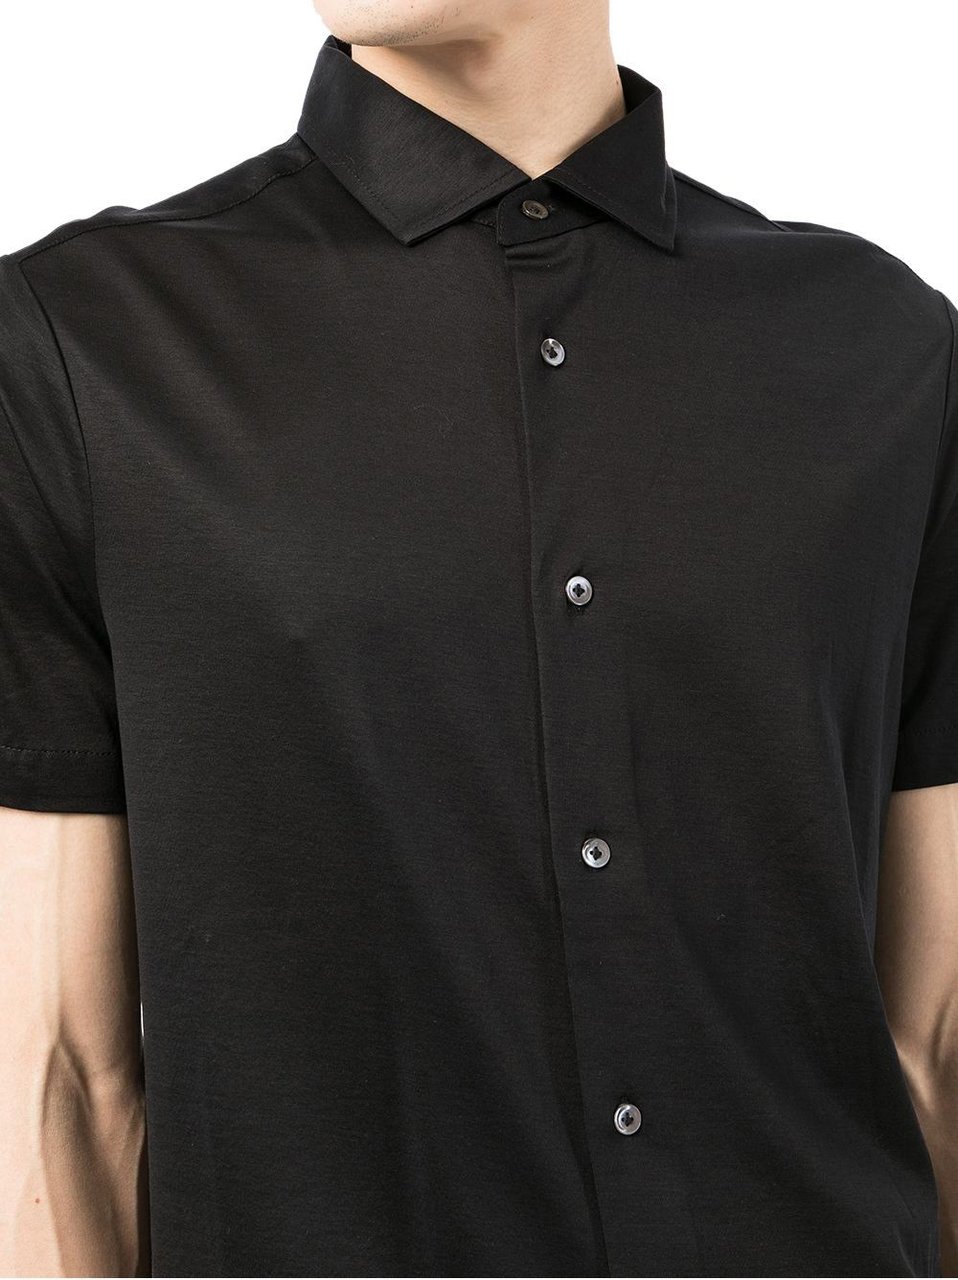 Emporio Armani Emporio Armani Shirts Black Zwart